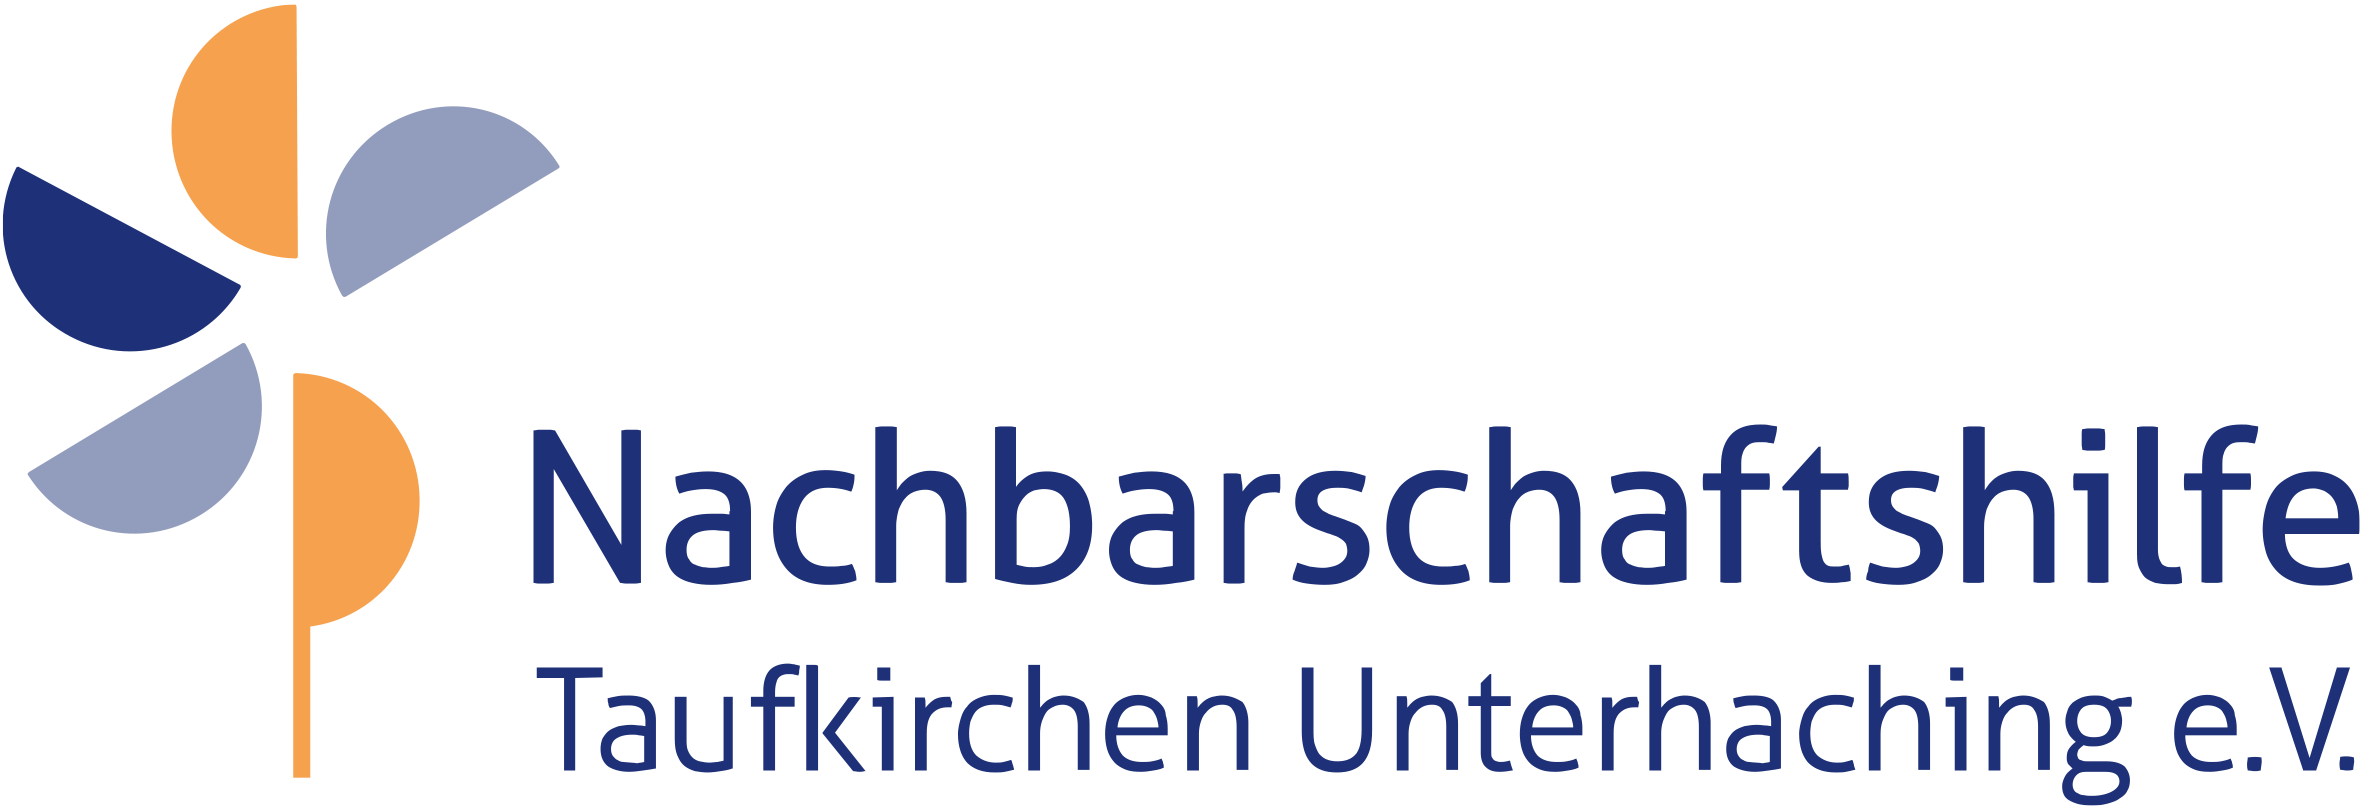 Nachbarschaftshilfe Taufkirchen Unterhaching - 404